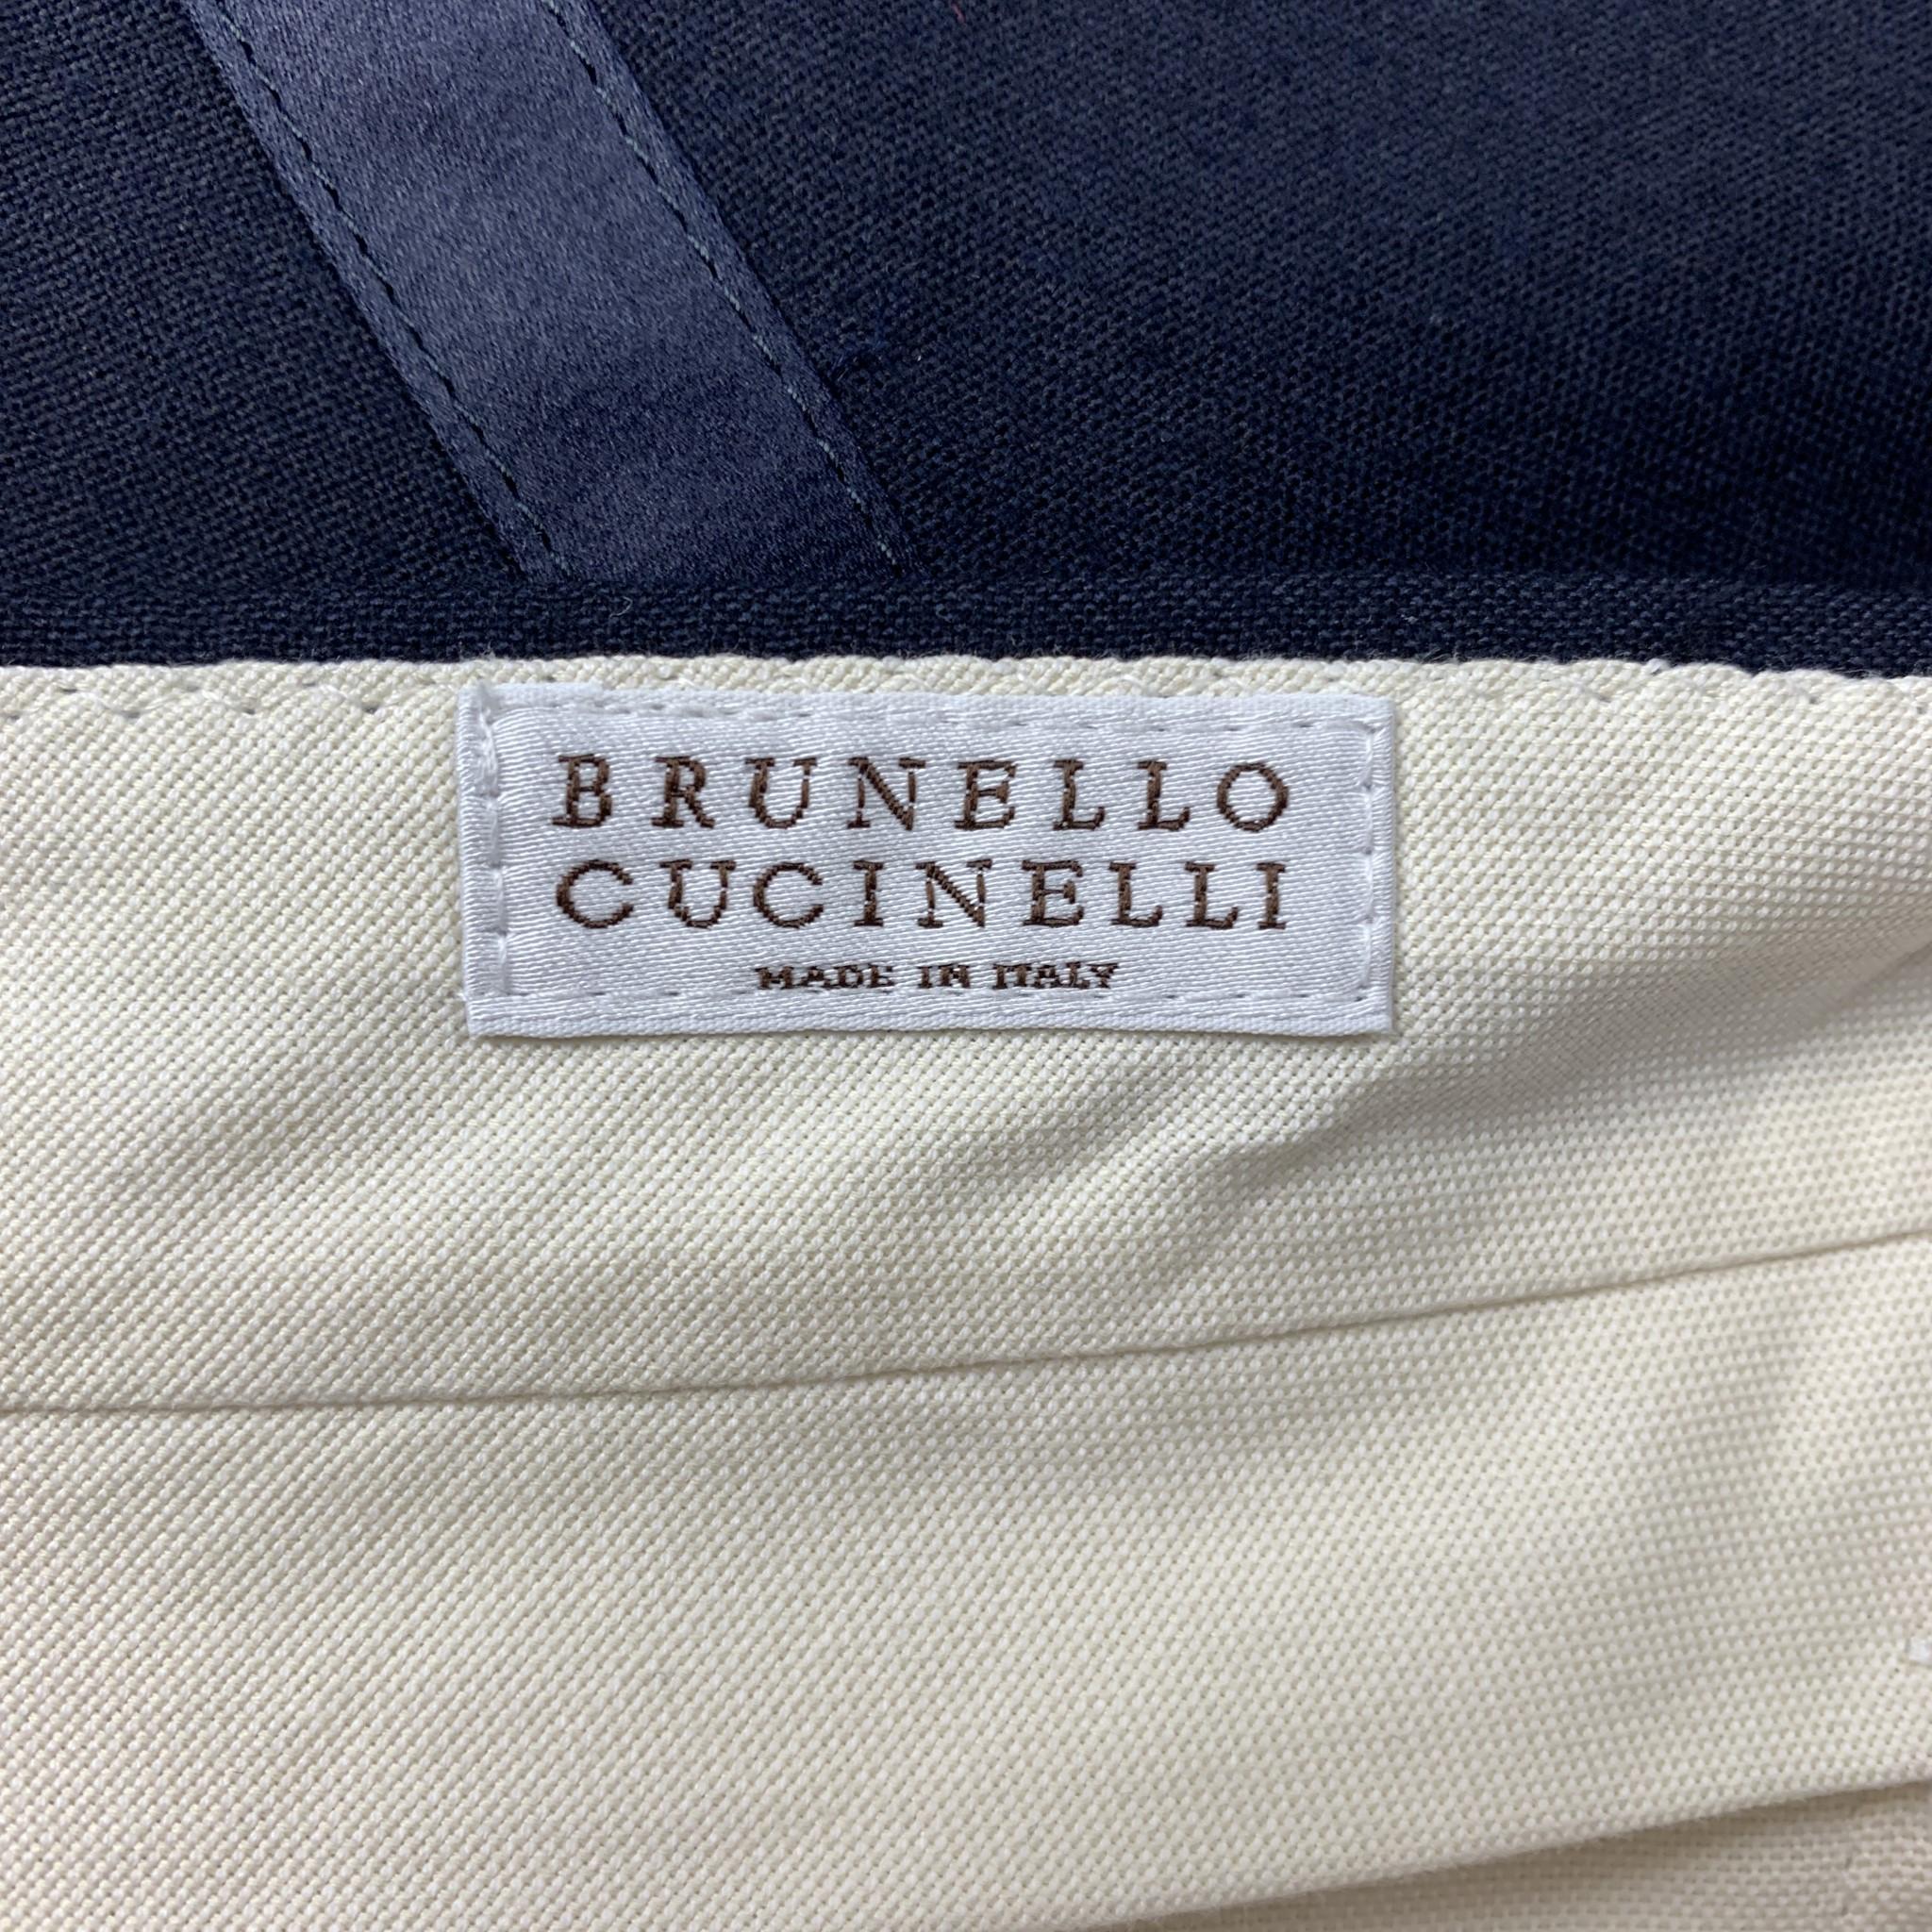 Men's BRUNELLO CUCINELLI Dress Pants - Size 32 / IT 48 Navy Blue Wool Zip Fly 